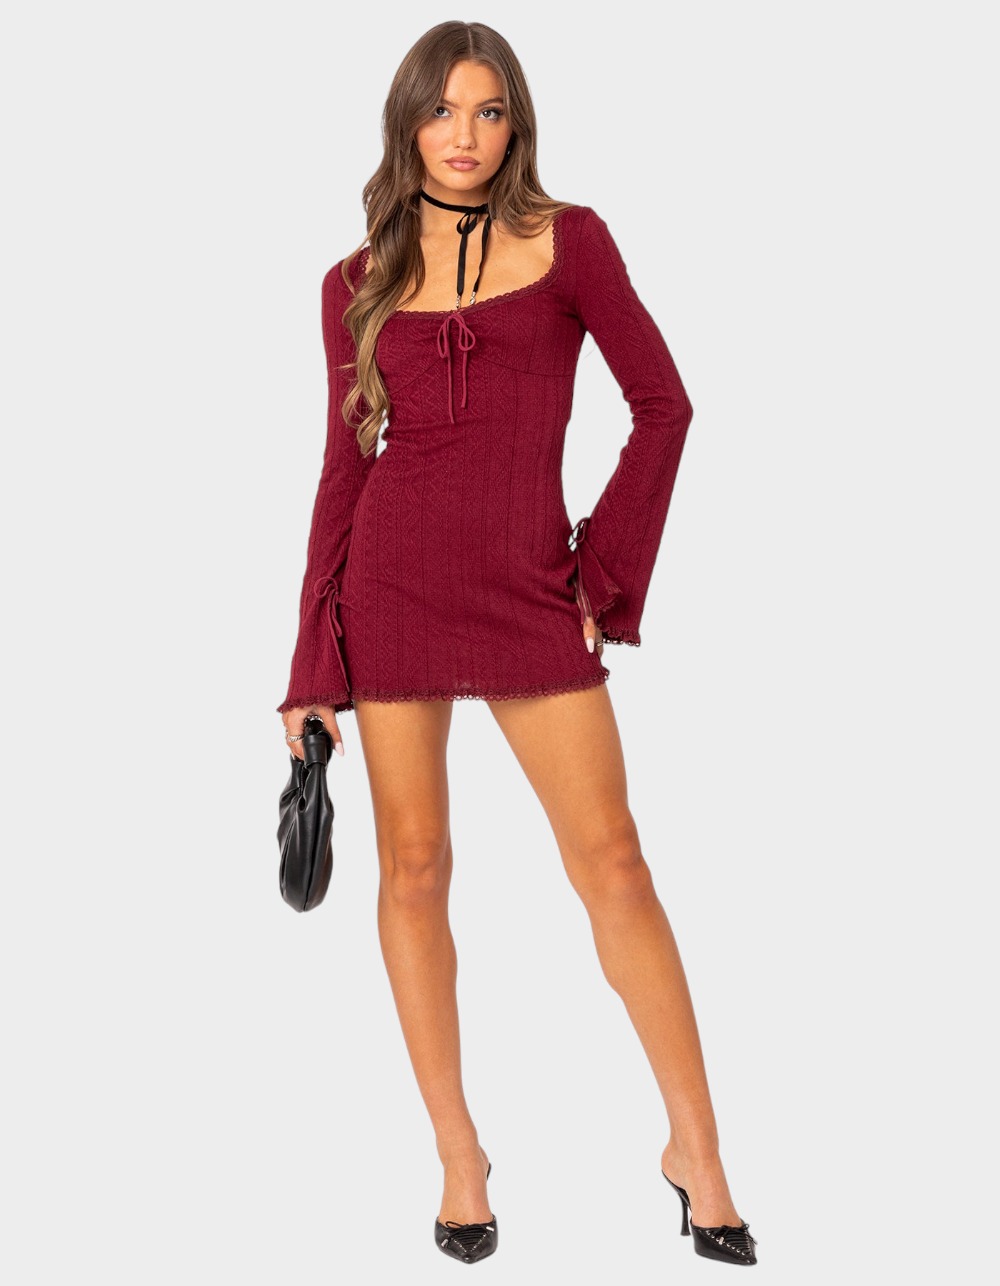 EDIKTED Krista Lacey Knit Mini Dress - DK RED